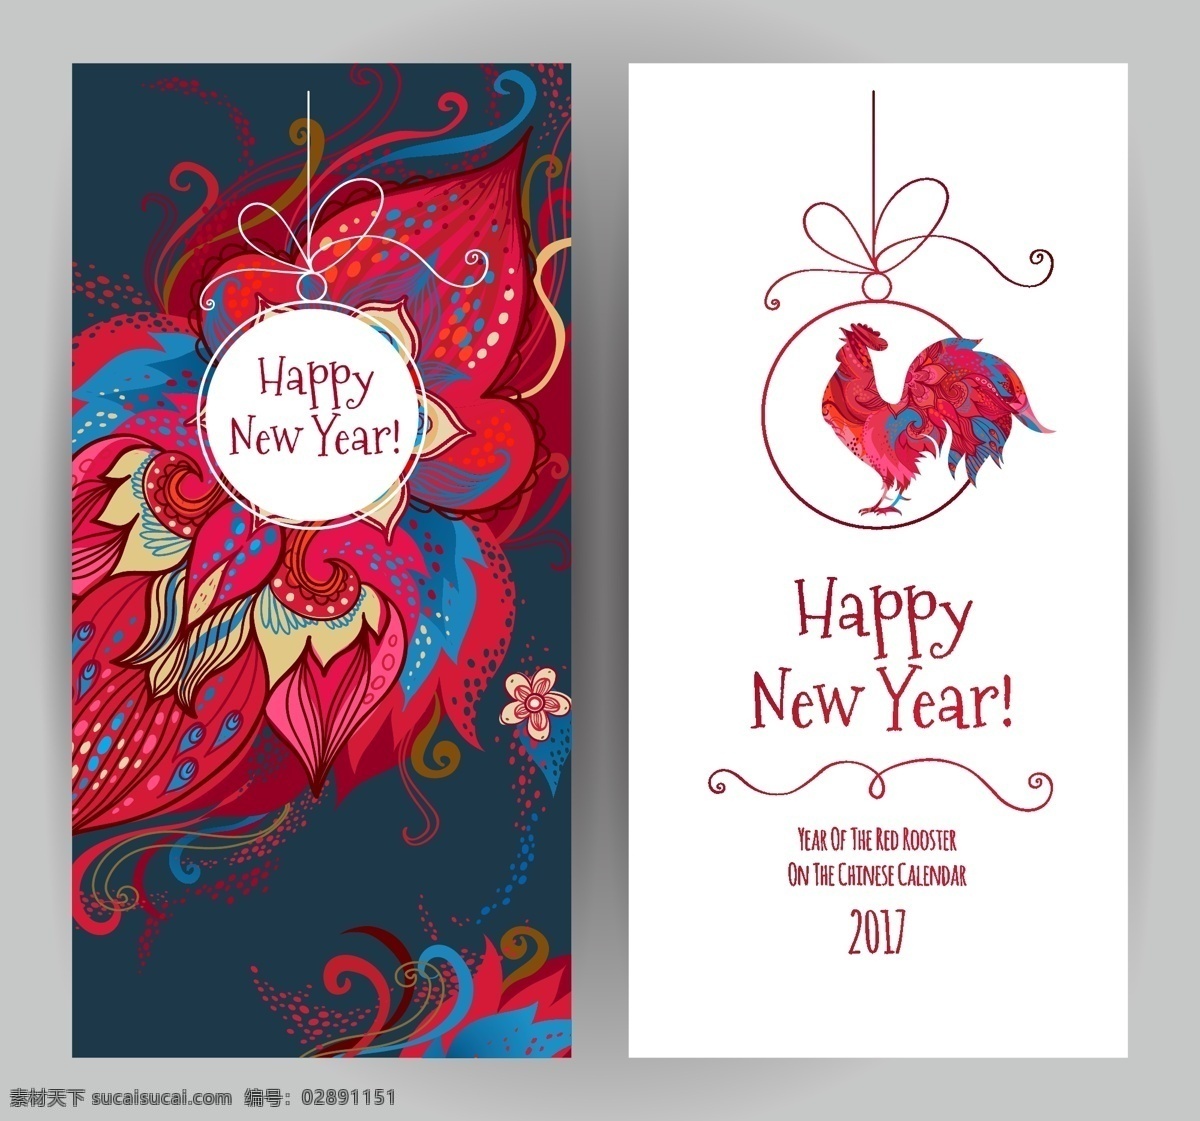 花朵 雄鸡 新年 素材图片 中国风素材 红色大公鸡 鸡年 新年素材 矢量 高清图片